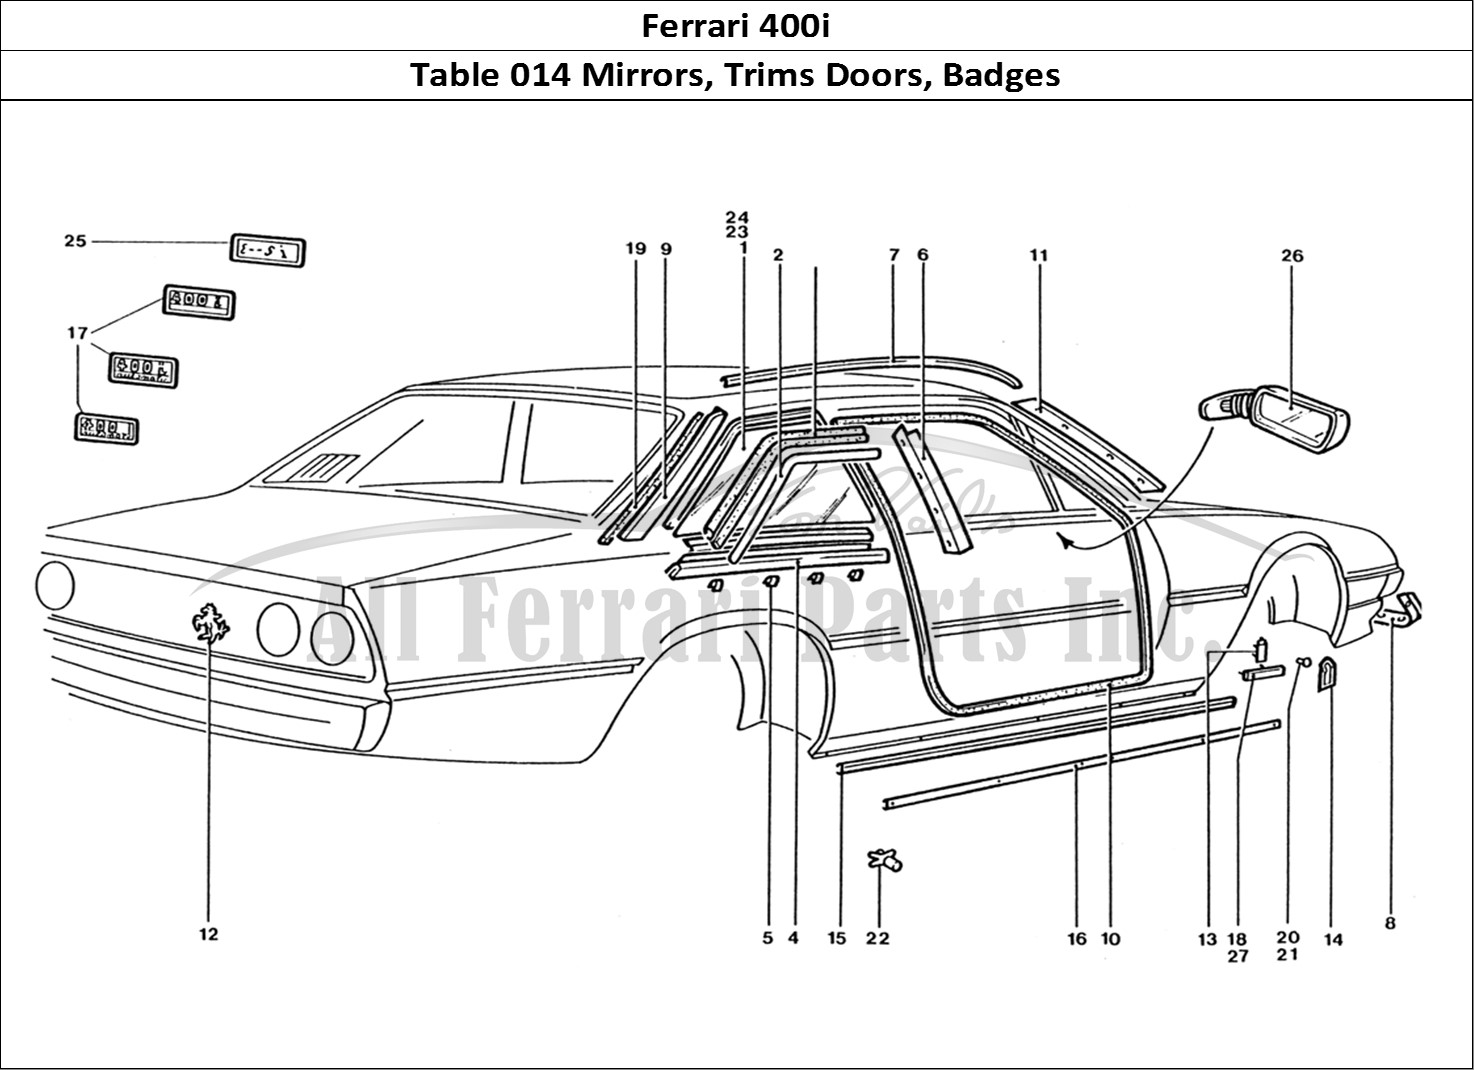 Ferrari Parts Ferrari 400 GT (Coachwork) Page 014 Door Mirrors - Badges & O